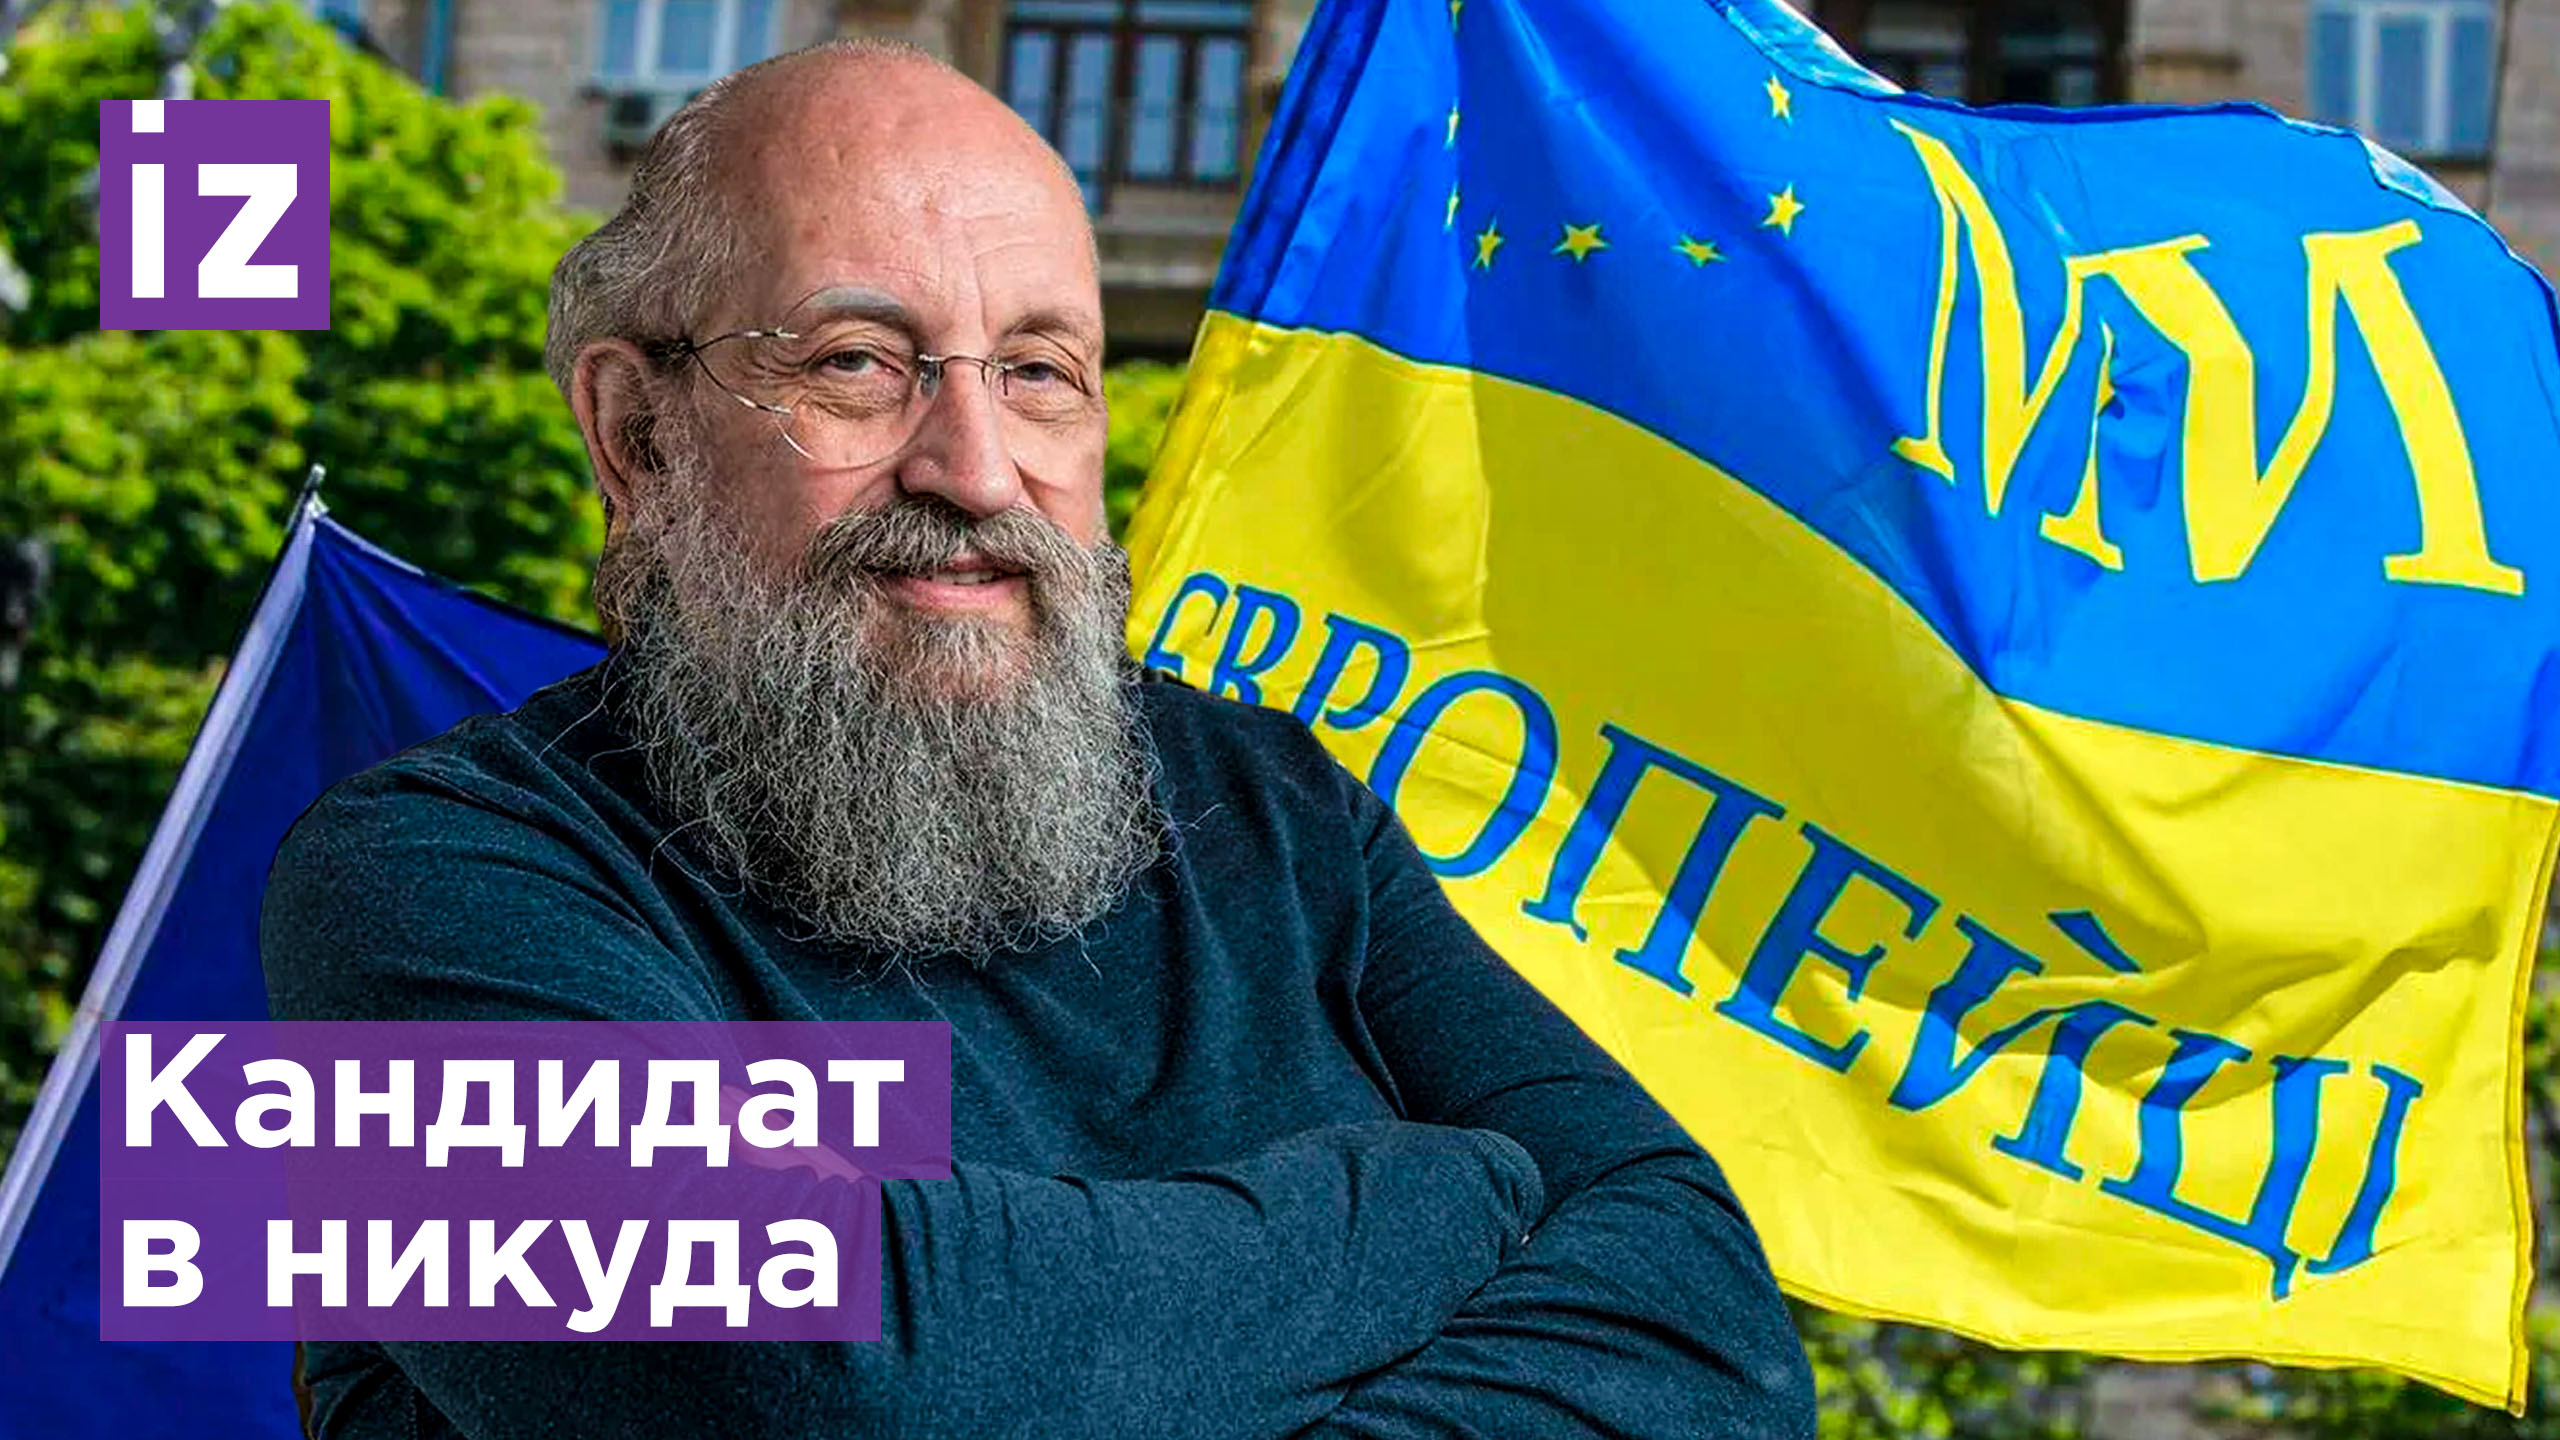 Террористической организации «Украина» не должно быть: вступит ли она в ЕС? / "Открытым текстом"